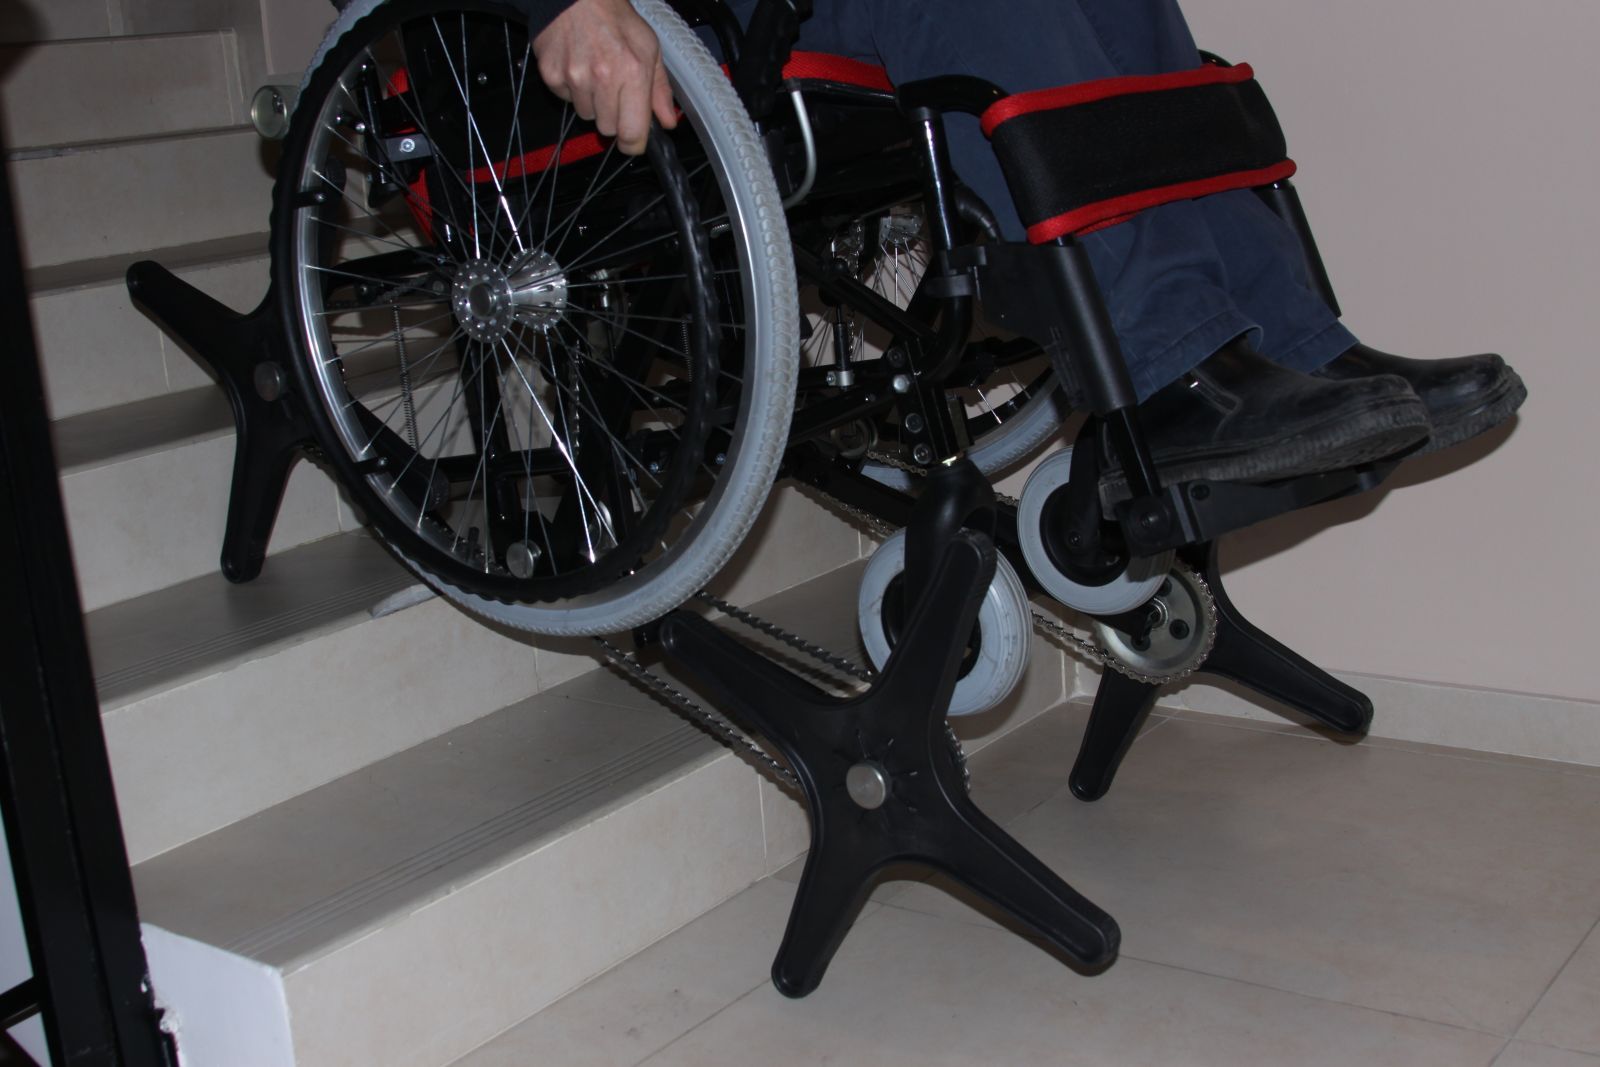 Шагающие колесо. Инвалидная коляска "ступенькоход" «гради-стандарт». Кресло-коляска ступенькоход «гради -стандарт». Инвалидной коляски - "ступенькоход" Гранди стандарт. Шагающая коляска для инвалидов.